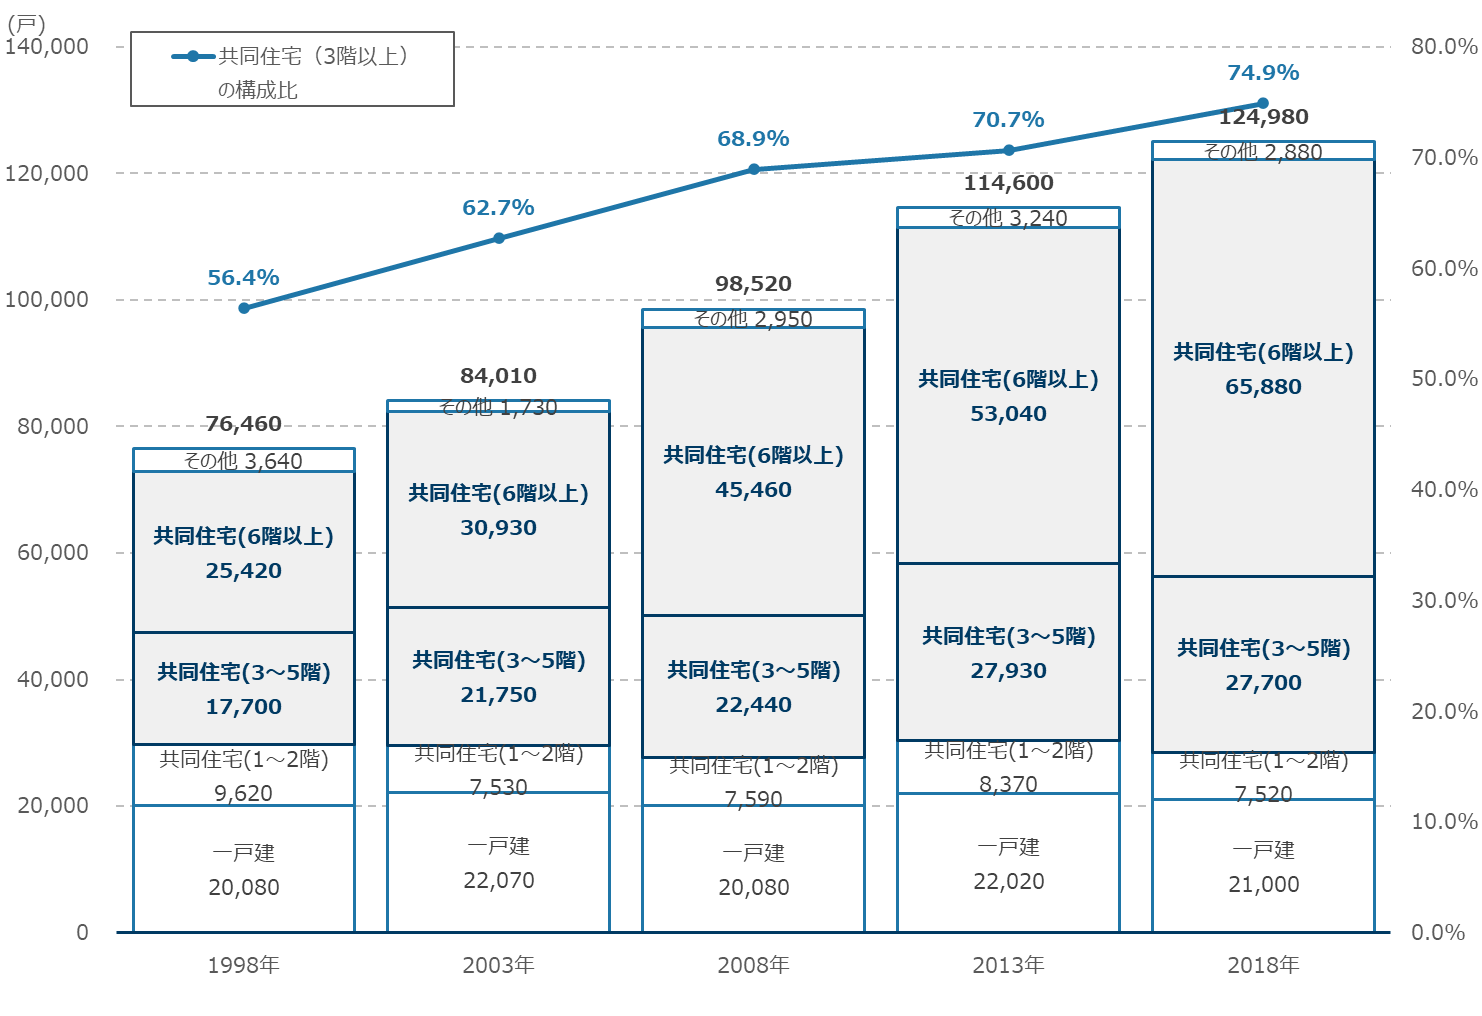 文京区における建て方別住宅戸数の推移